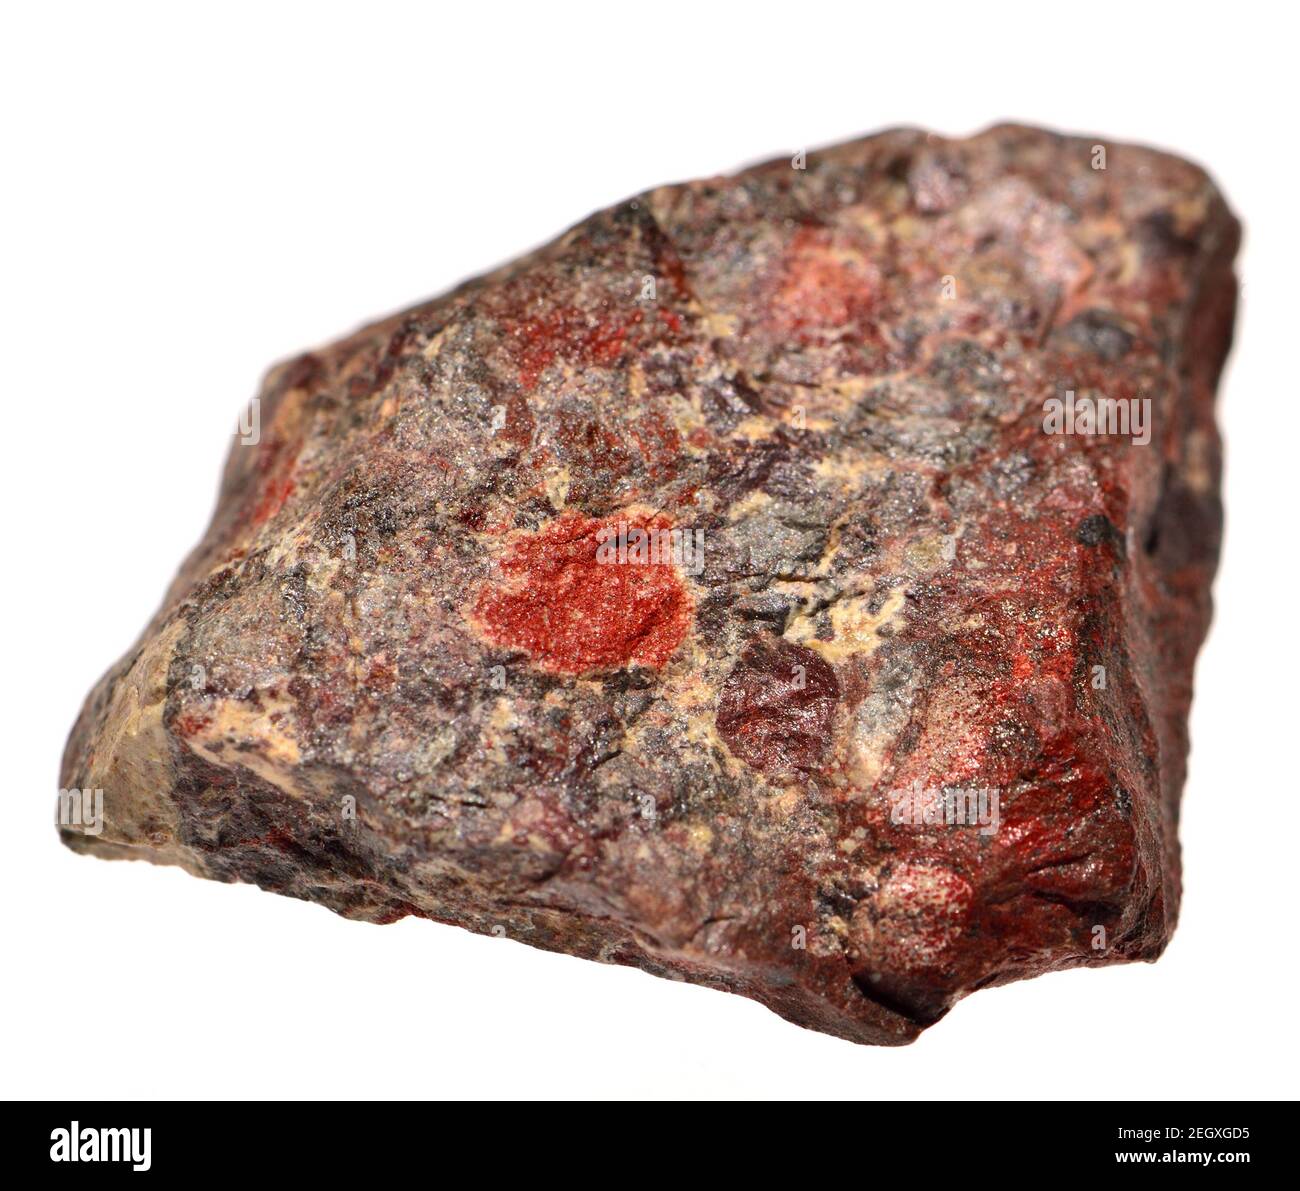 Brekzie (Südafrika) Sedimentgestein aus gebrochen Fragmente von Mineralien oder Felsen zusammen durch eine feinkörnige Matrix Stockfoto